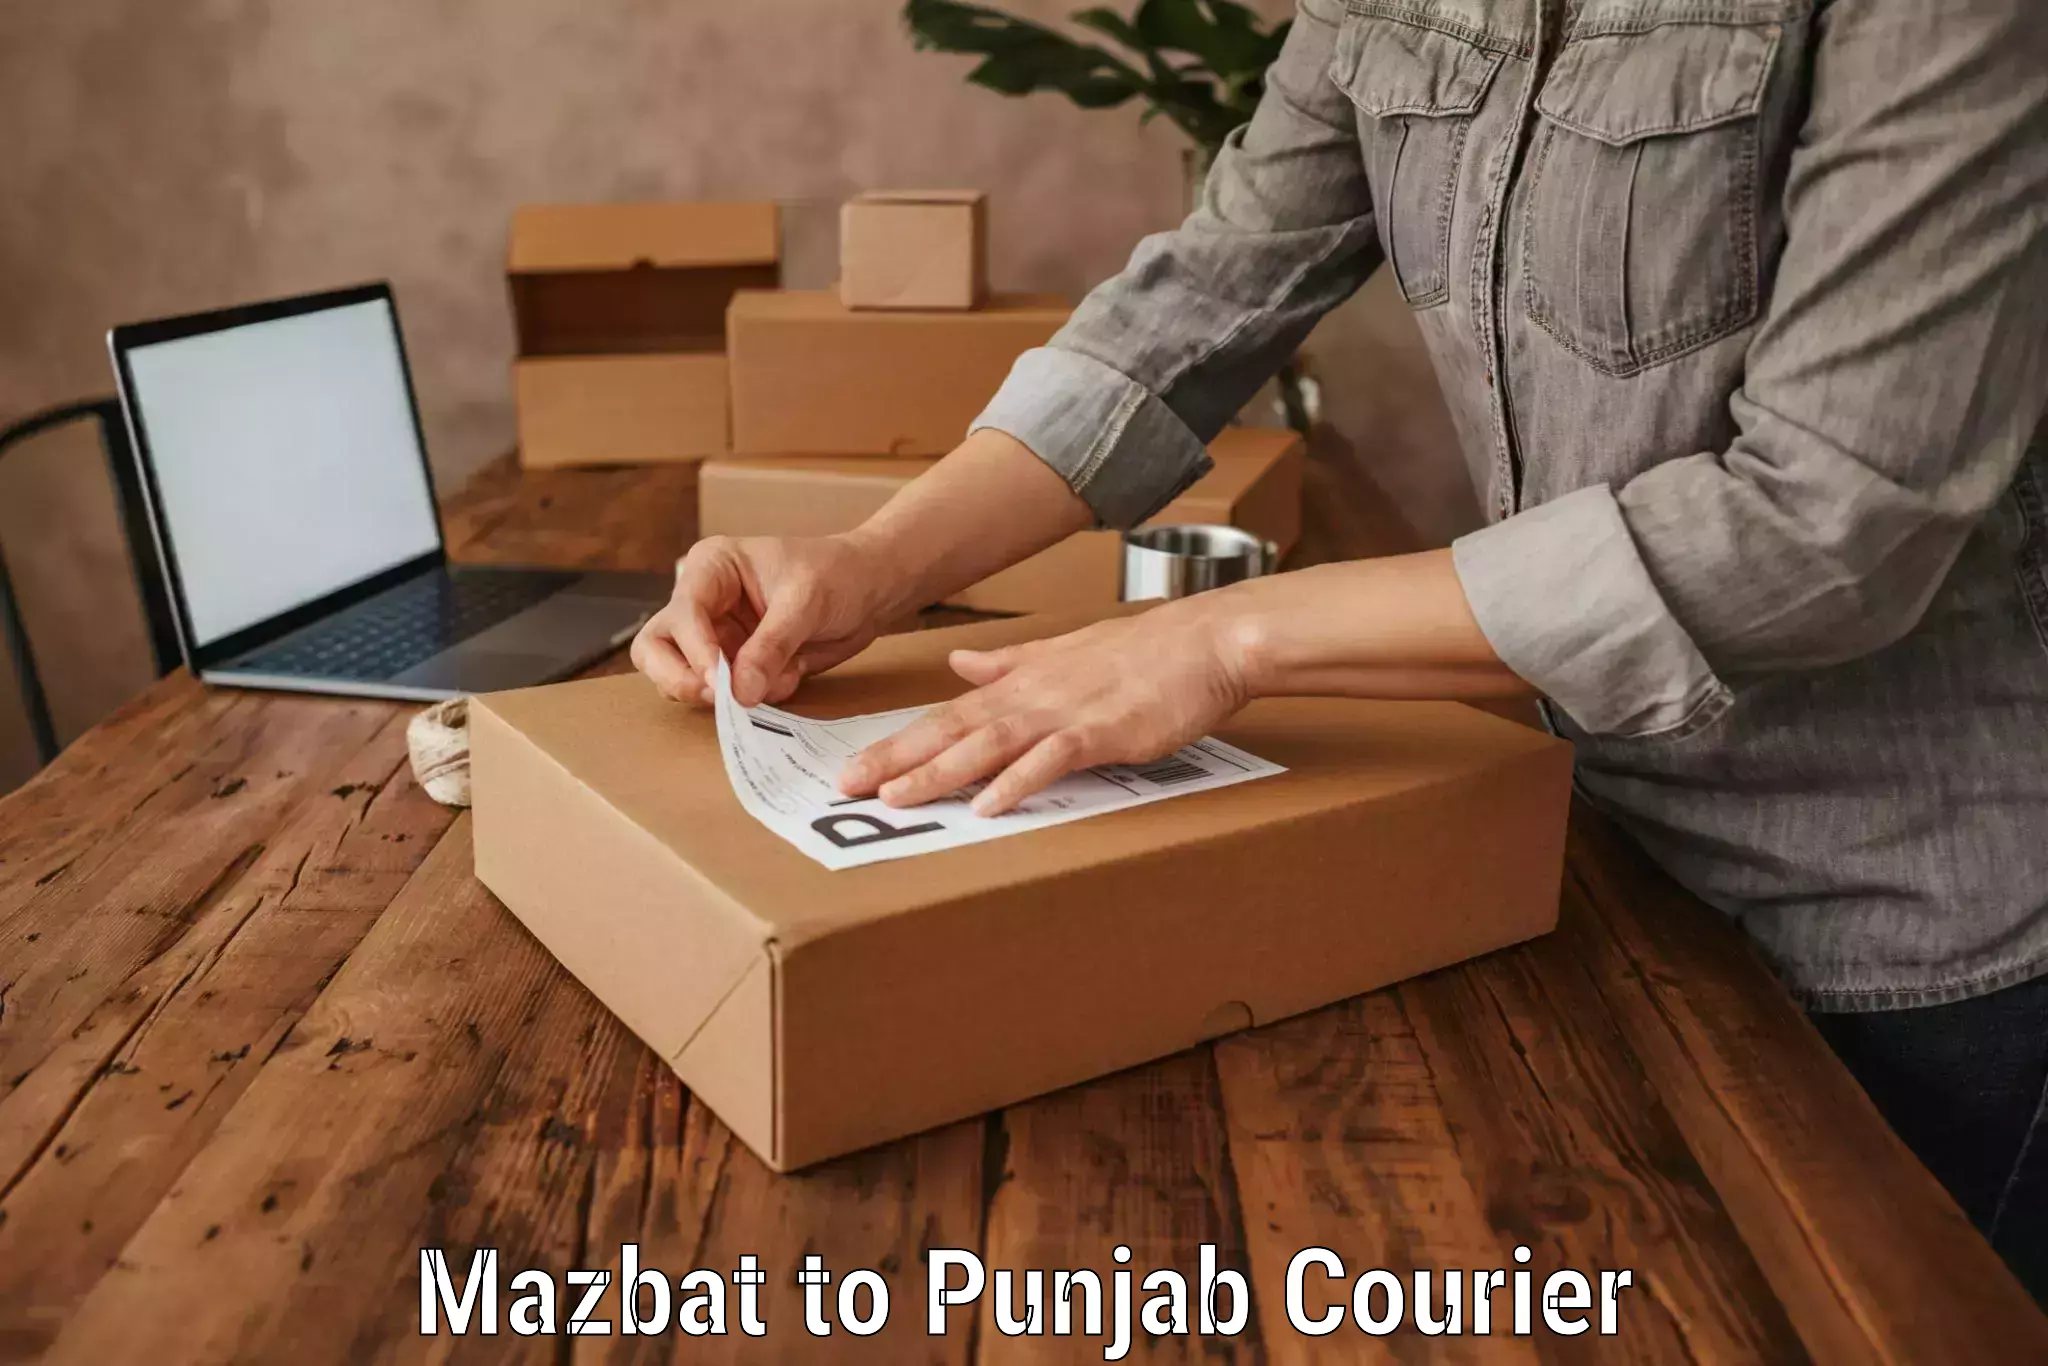 Door-to-door baggage service Mazbat to Punjab